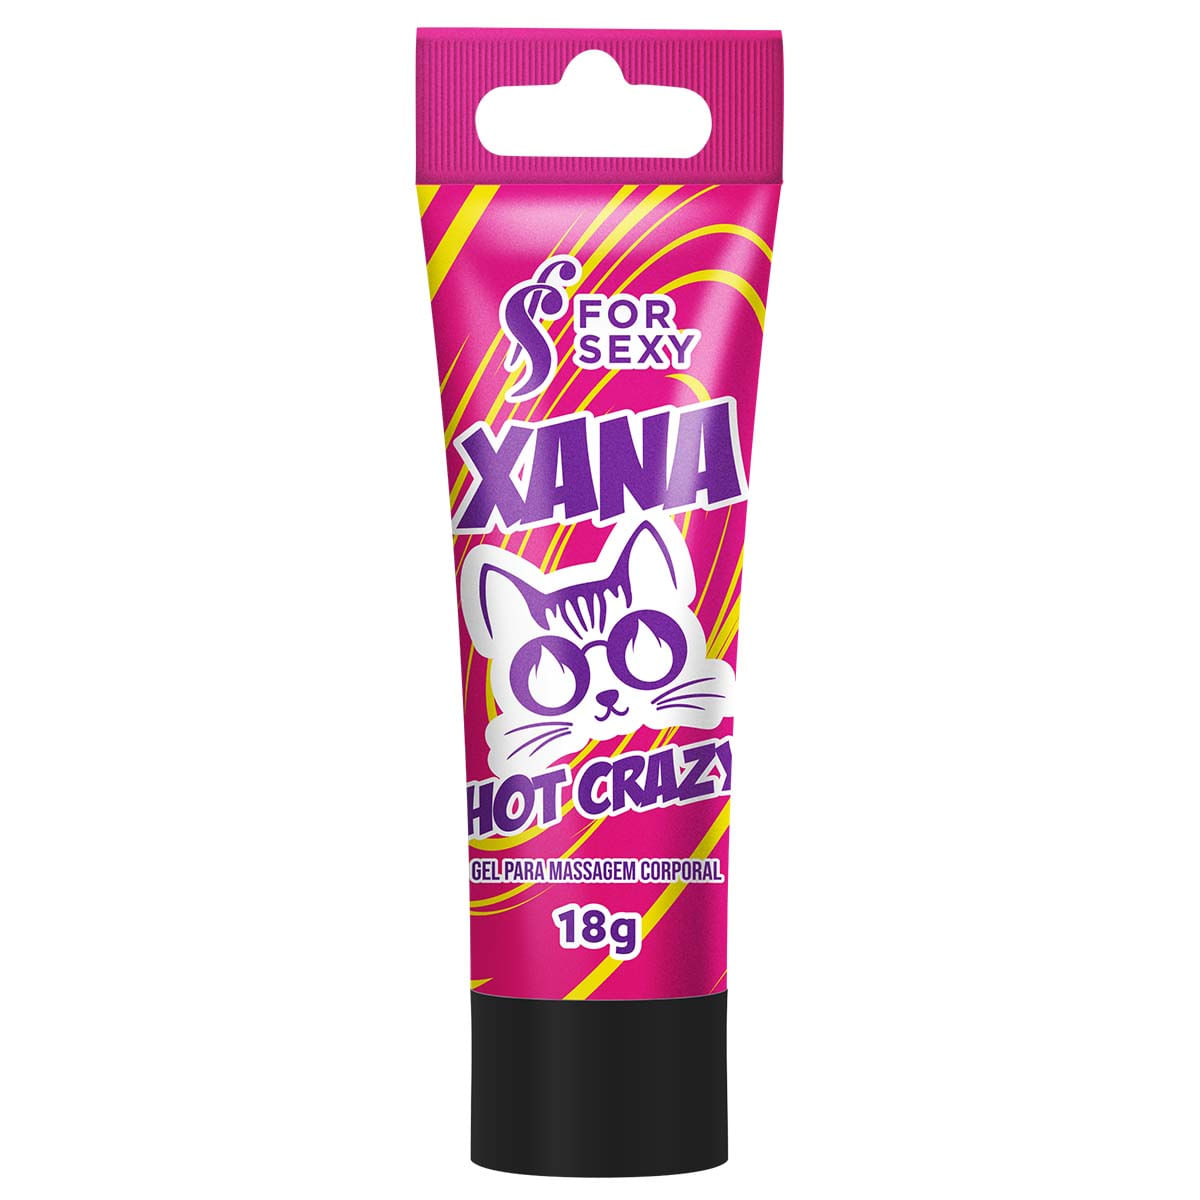 Xana Hot Crazy Excitante Feminino 18g For Sexy